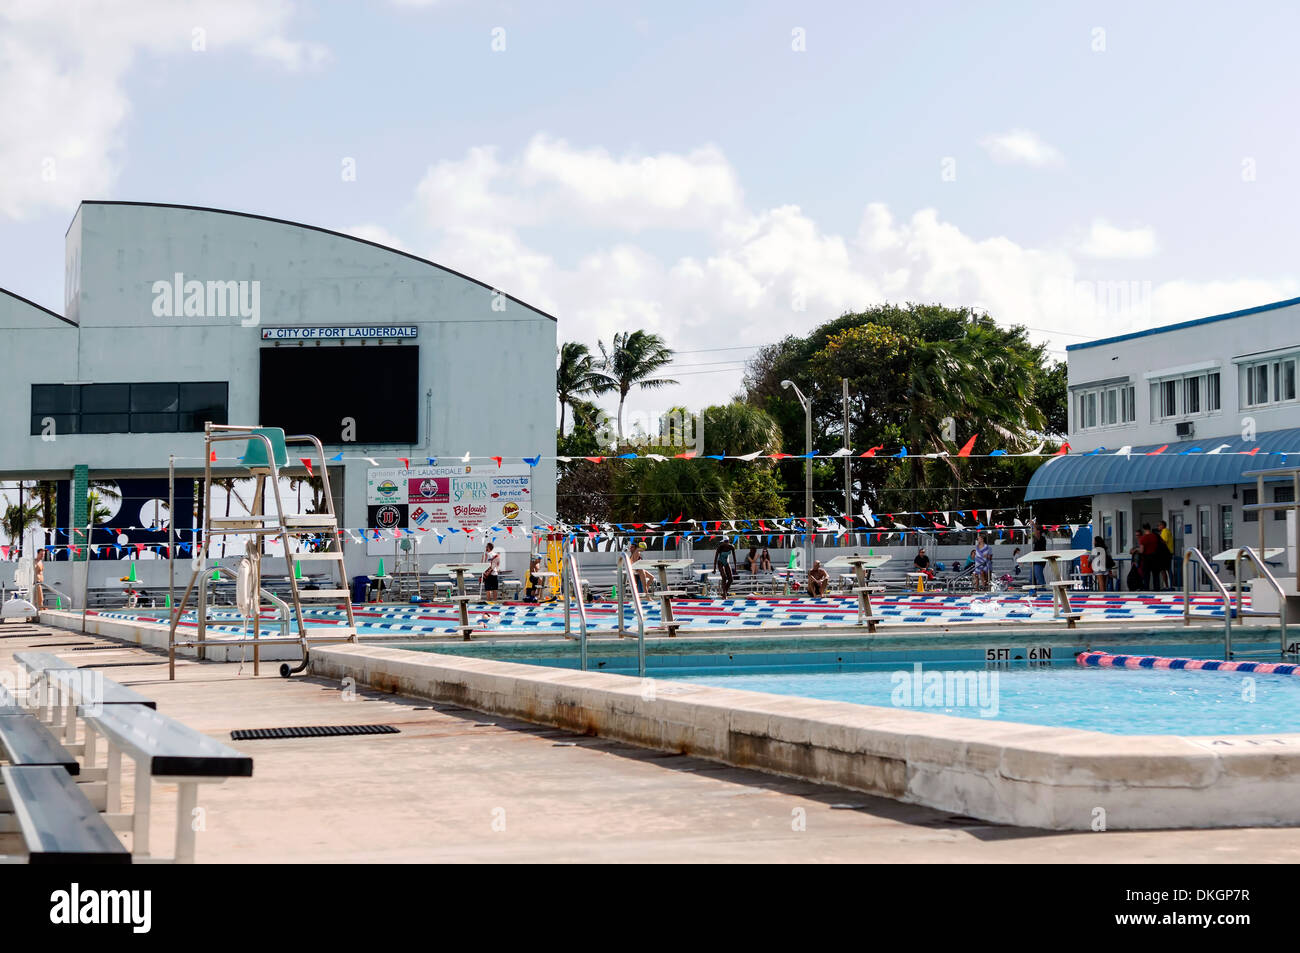 Swimming Hall of Fame piscina pubblica e centro acquatico lungo la spiaggia di Fort Lauderdale. Florida, Stati Uniti d'America. Foto Stock